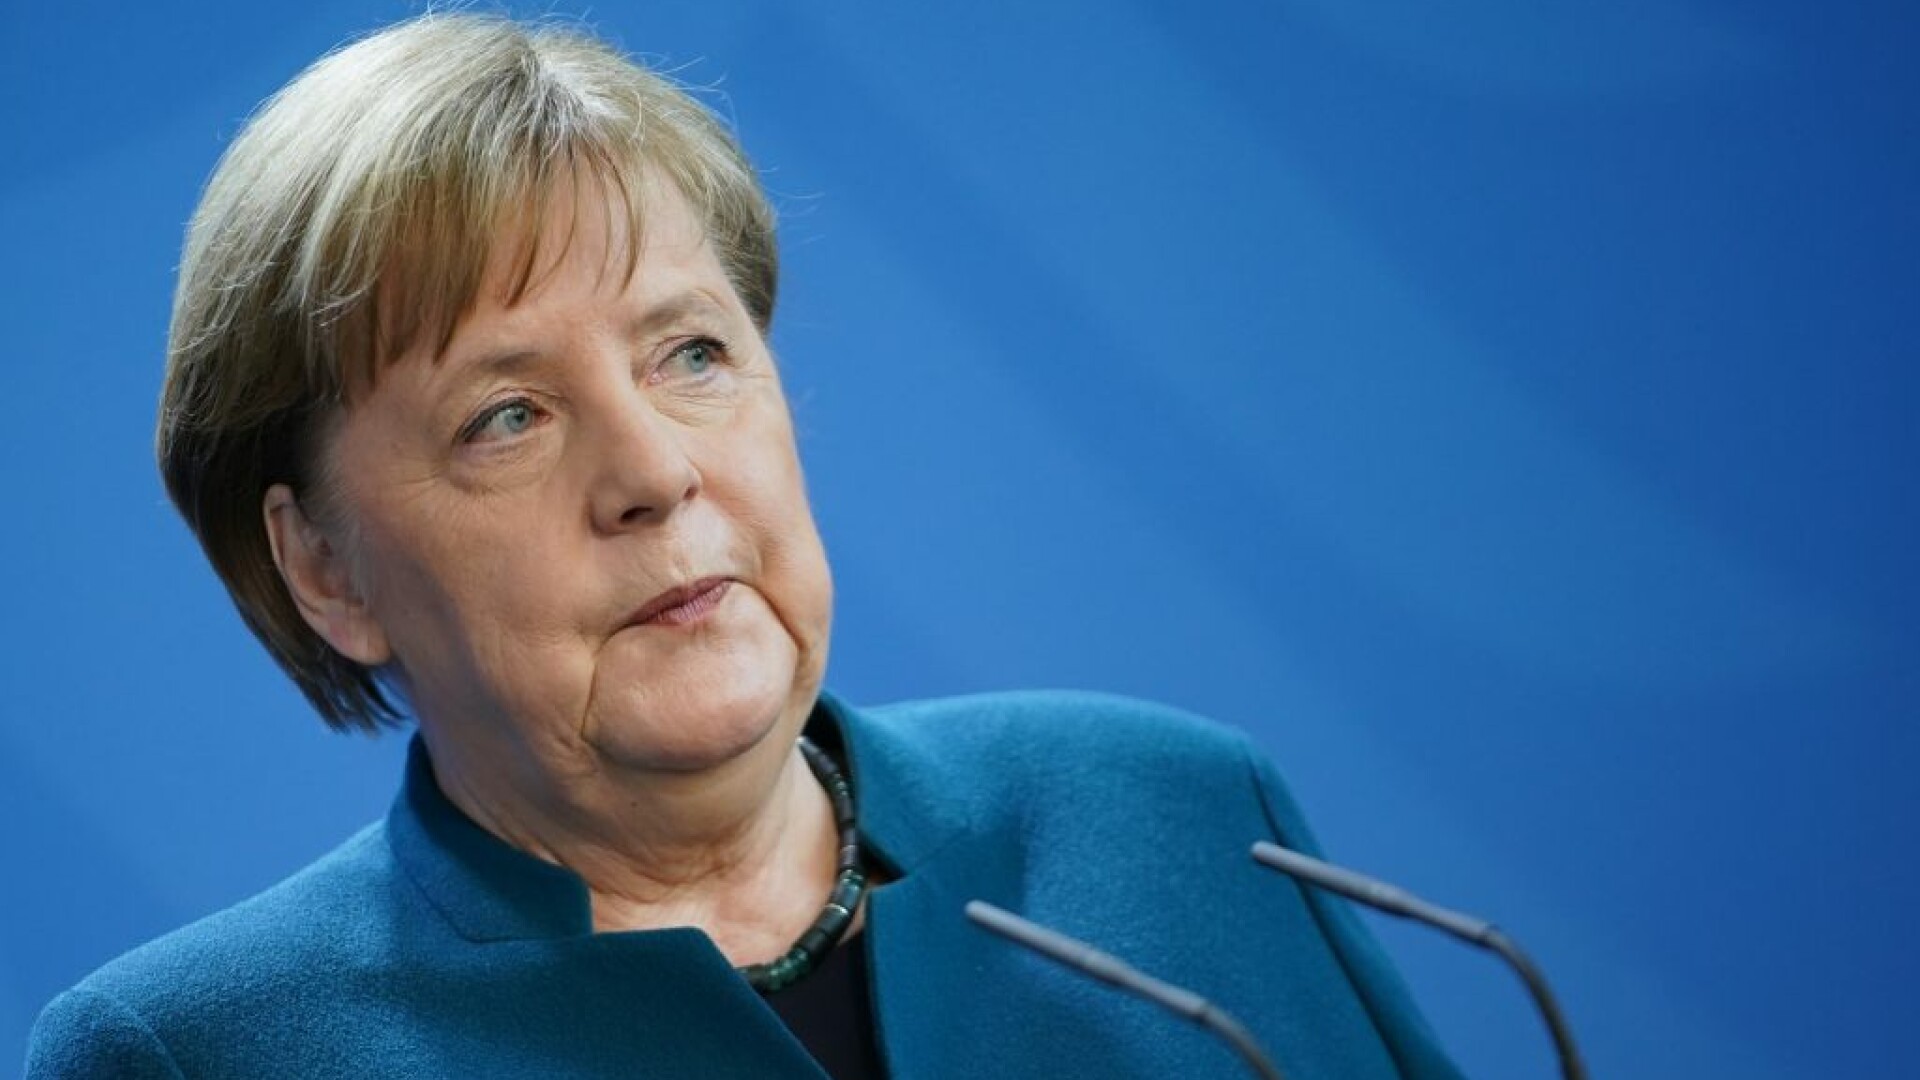 Angela Merkel le cere germanilor să aibă răbdare. Când crede că va trece criza